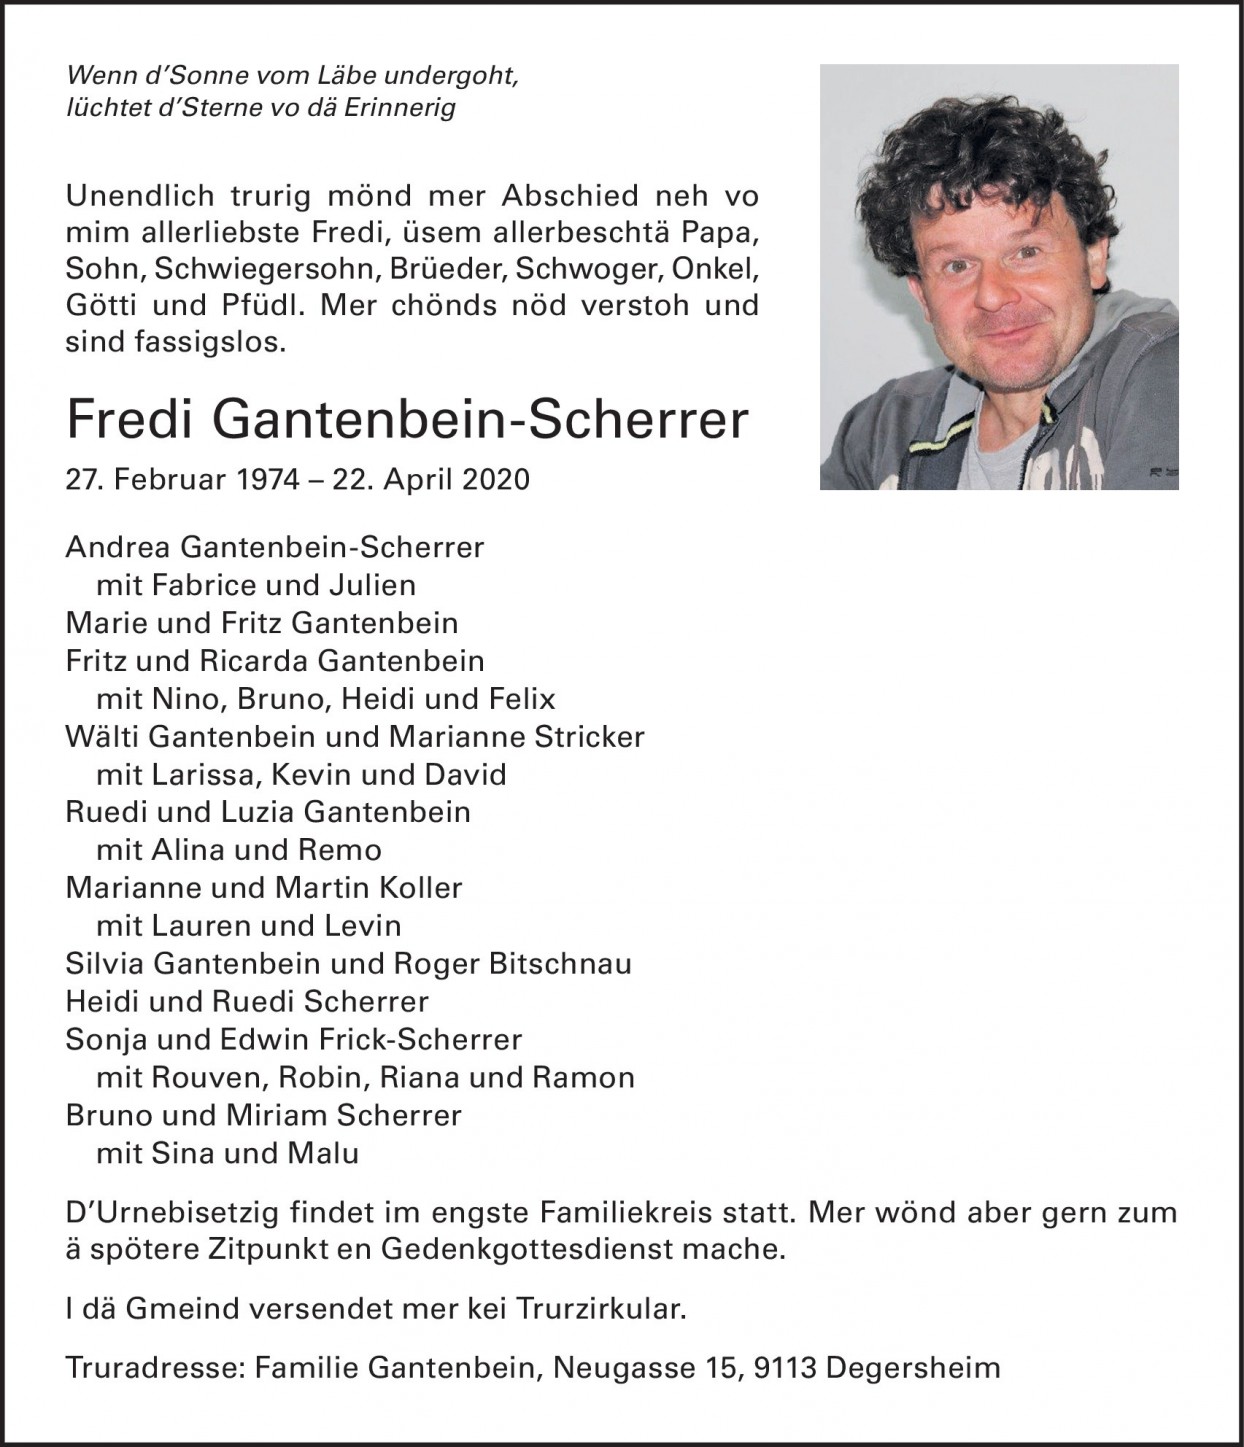 Fredi Gantenbein-Scherrer